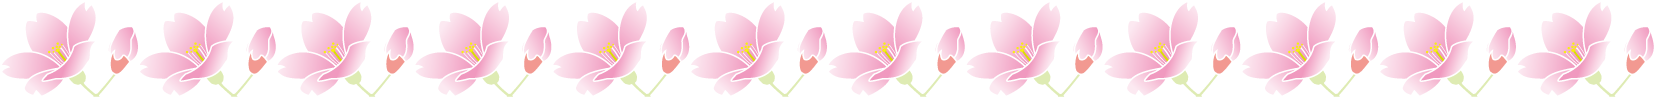 春の花の飾り罫11-桜イラスト